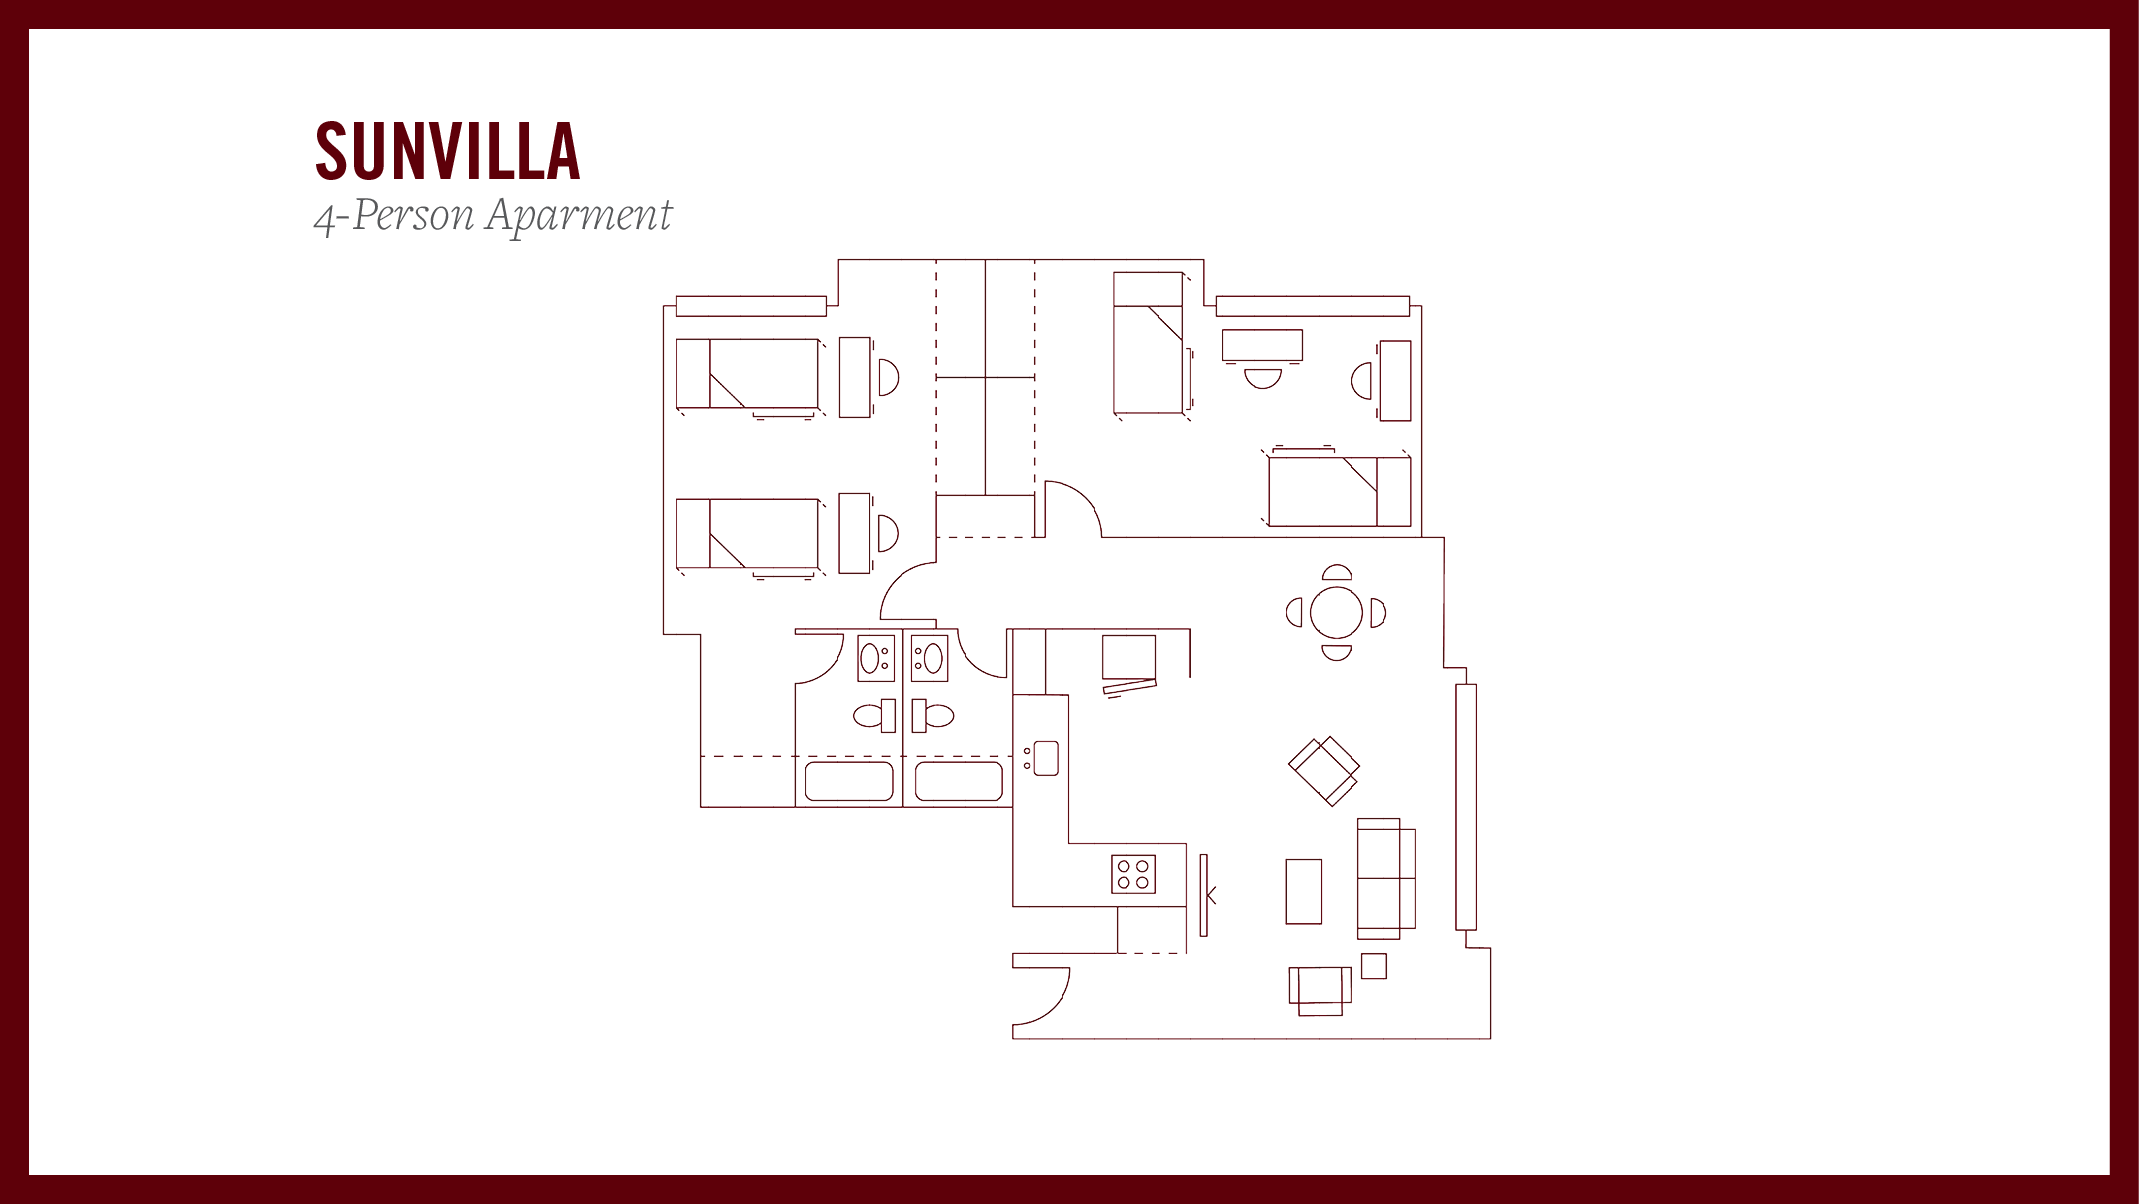 Sunvilla 4-person apartment